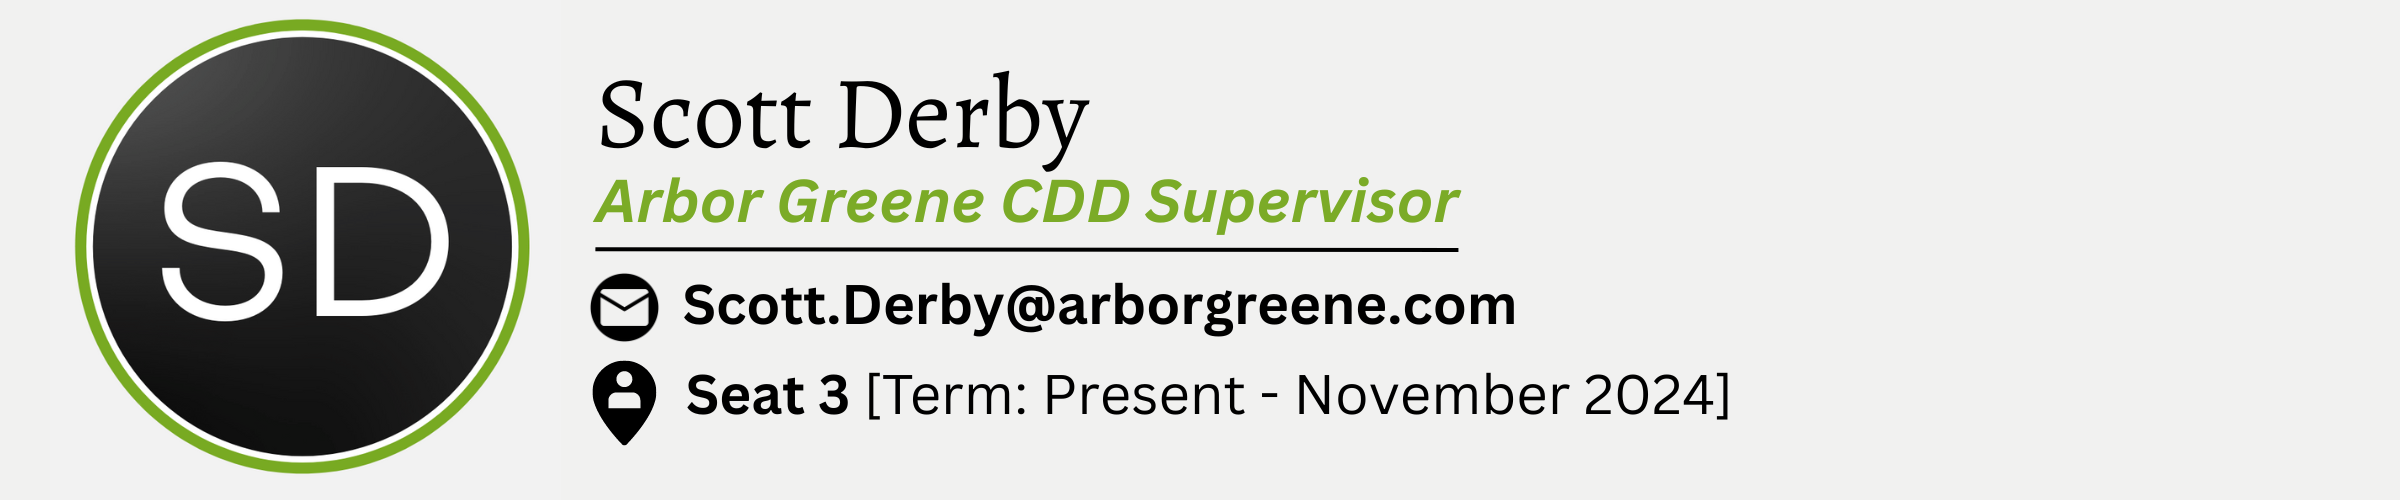 Scott Derby. Arbor Greene CDD Supervisor. E-Mail is Scott.Derby@arborgreene.com. Seat #3. Term from Present to November 2024.